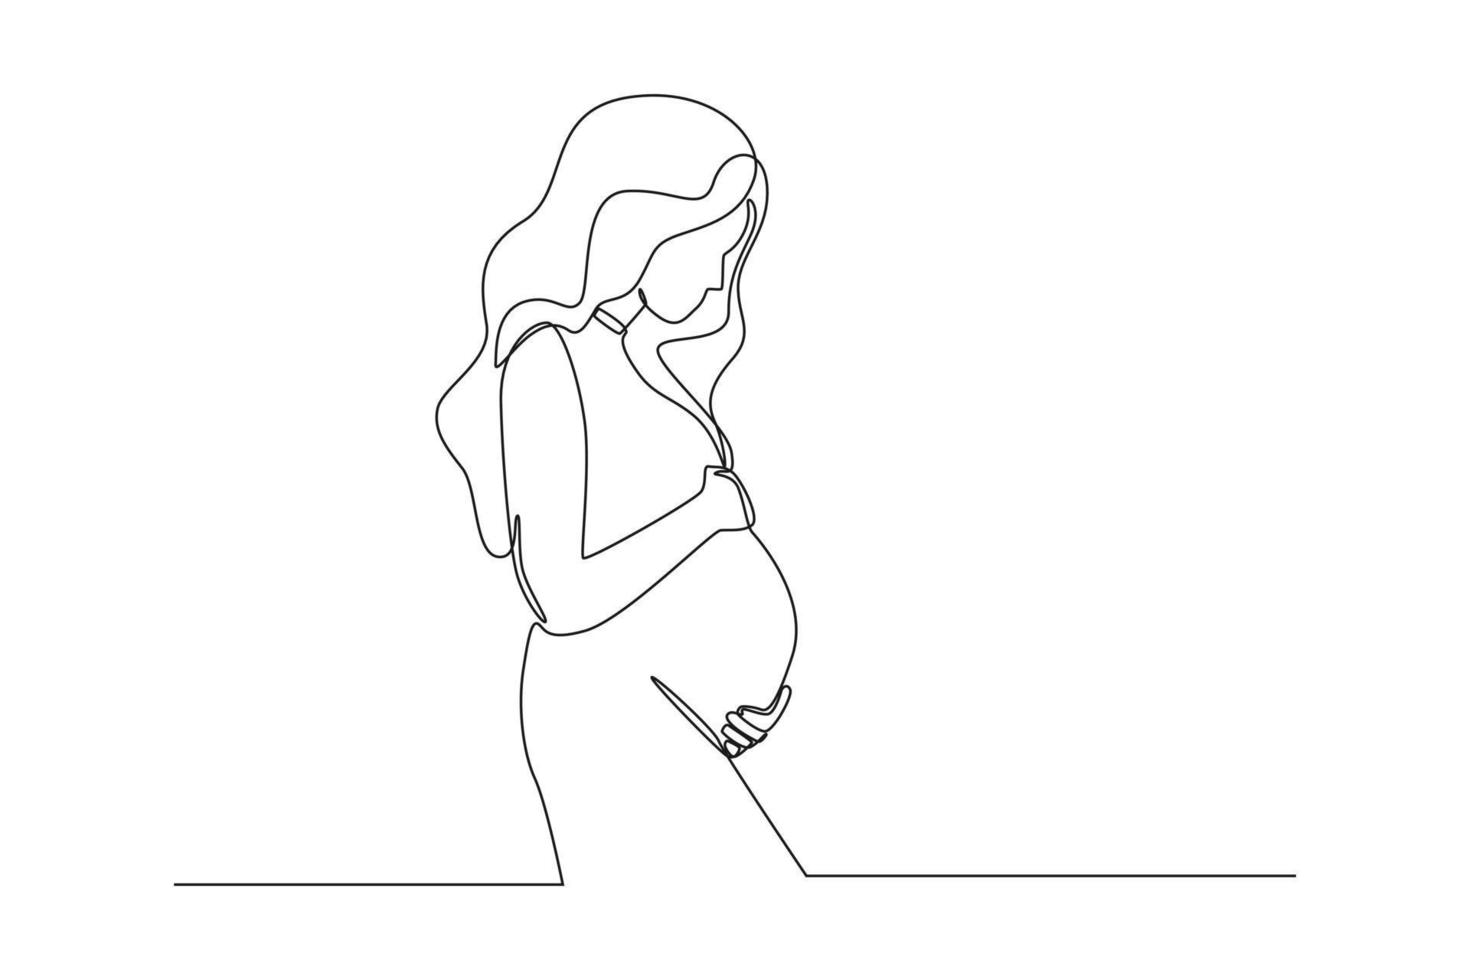 único desenho de uma linha jovem linda mulher grávida em pé com barriga grande. dia mundial da população. linha contínua desenhar design gráfico ilustração vetorial. vetor